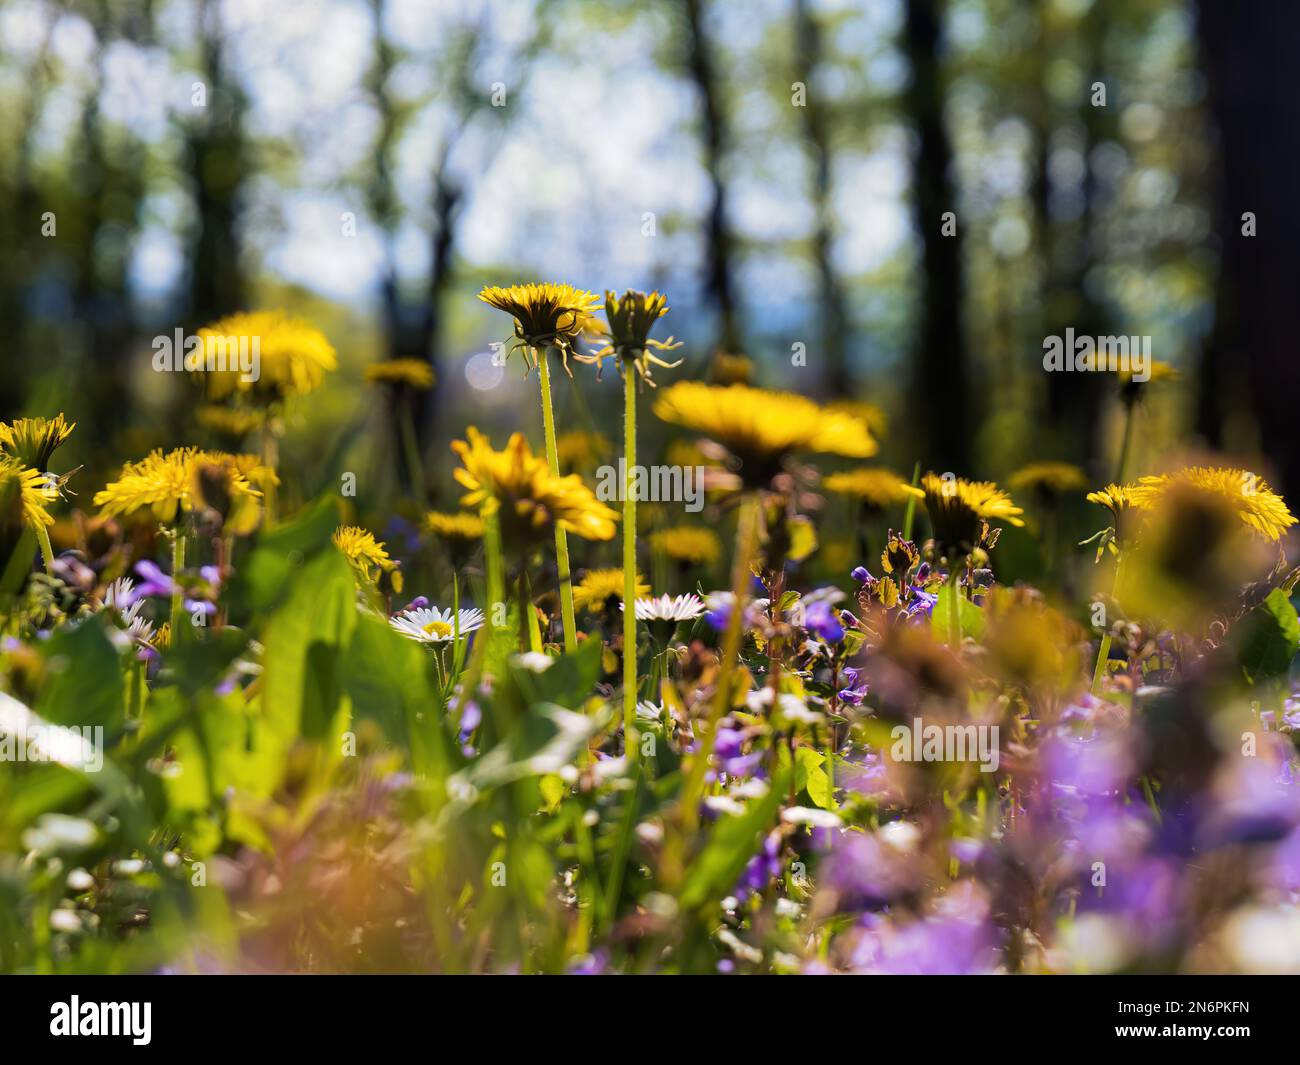 Pelouse de prairie sauvage au printemps dans un parc forestier ensoleillé avec pissenlits et pâquerettes vert violet jaune Banque D'Images